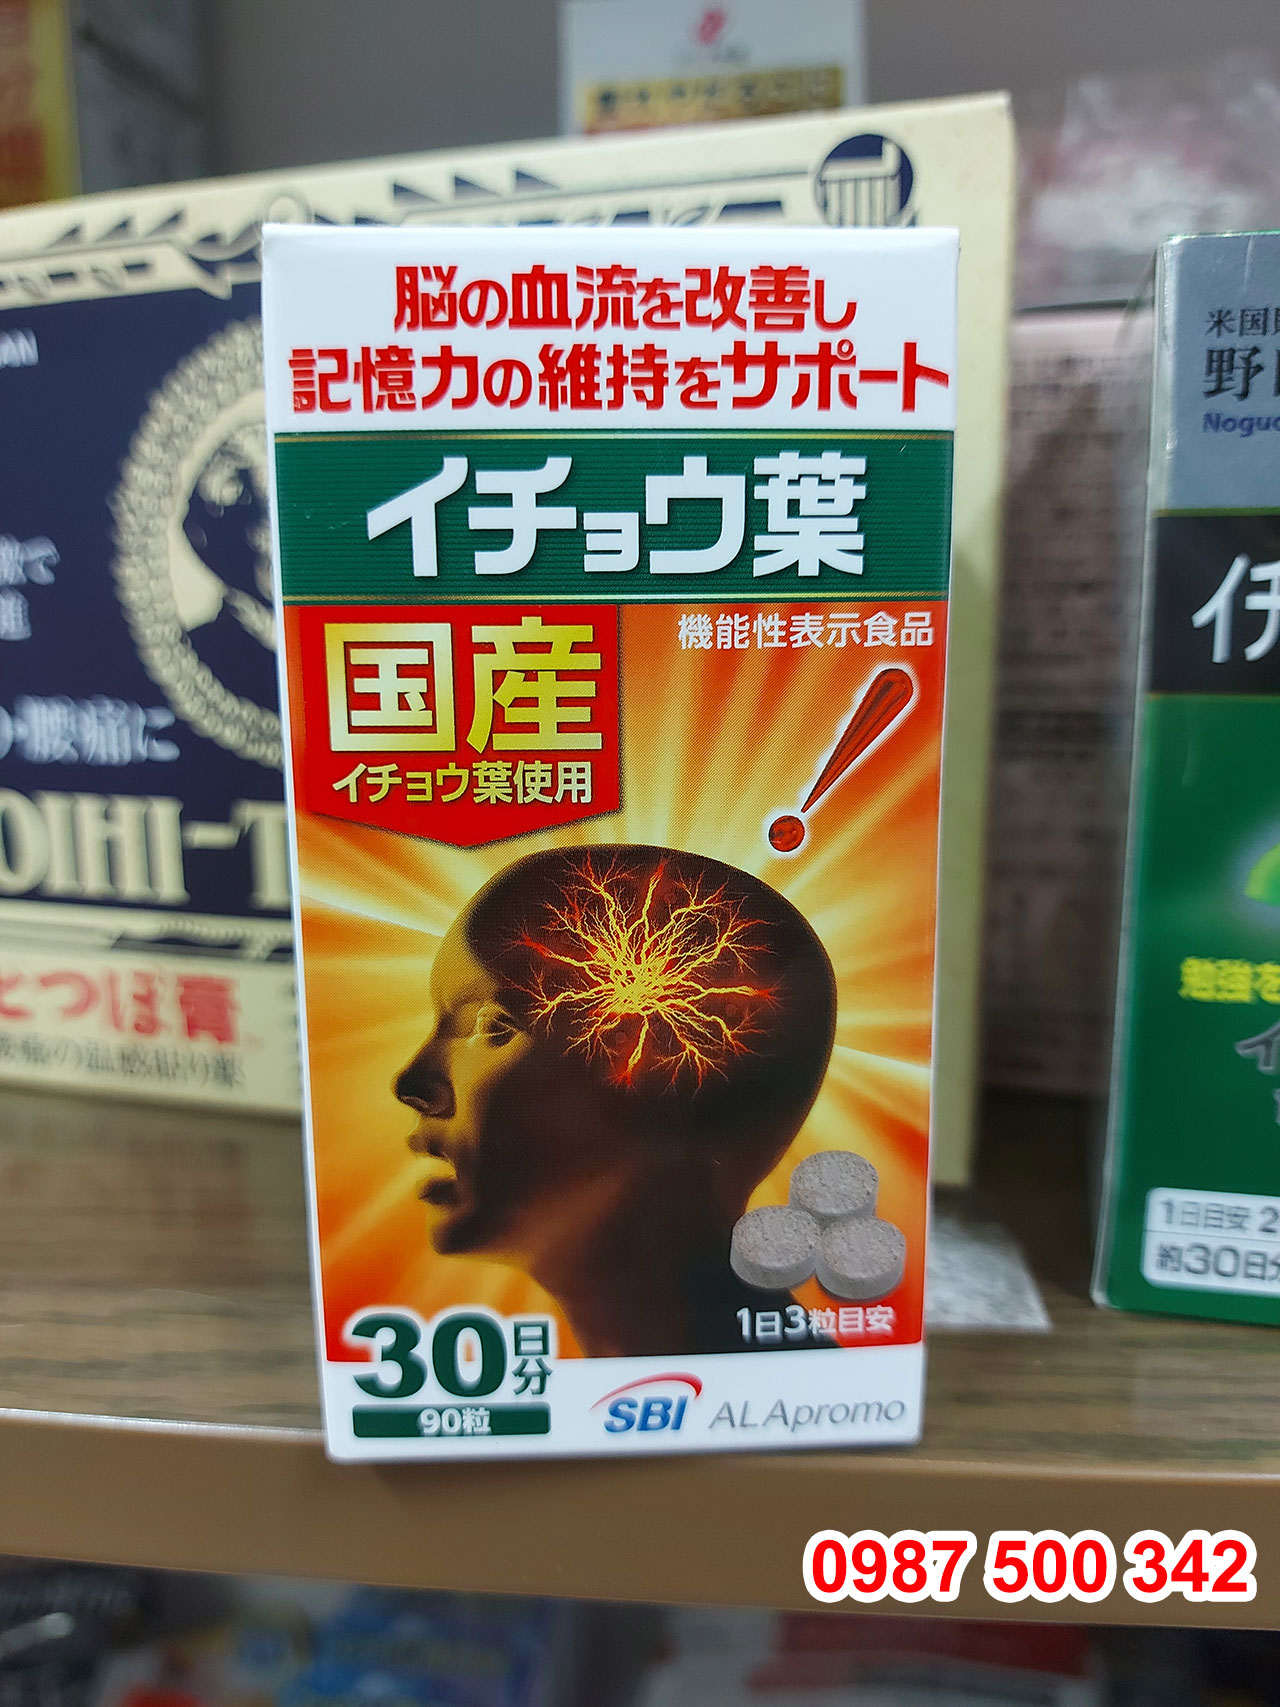 Viên uống bổ não SBI ALApromo 90 viên Nhật Bản